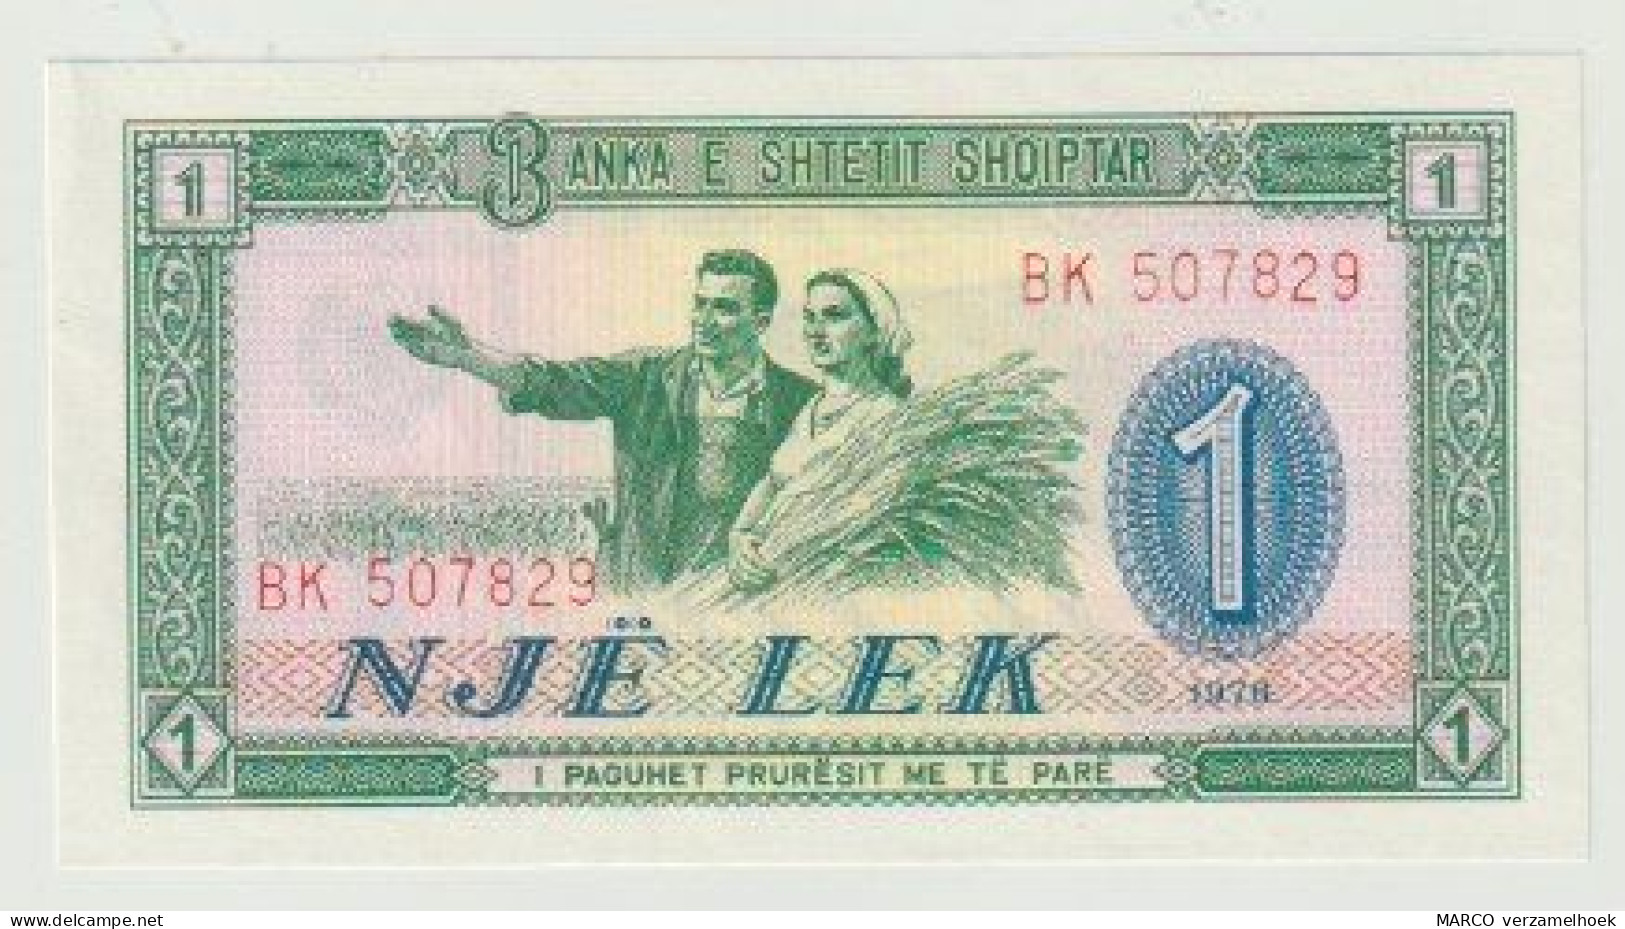 Banknote Banka E Shetetit Shqiptar Albania-albanië 1 Lek 1976 UNC (BK) - Albanië